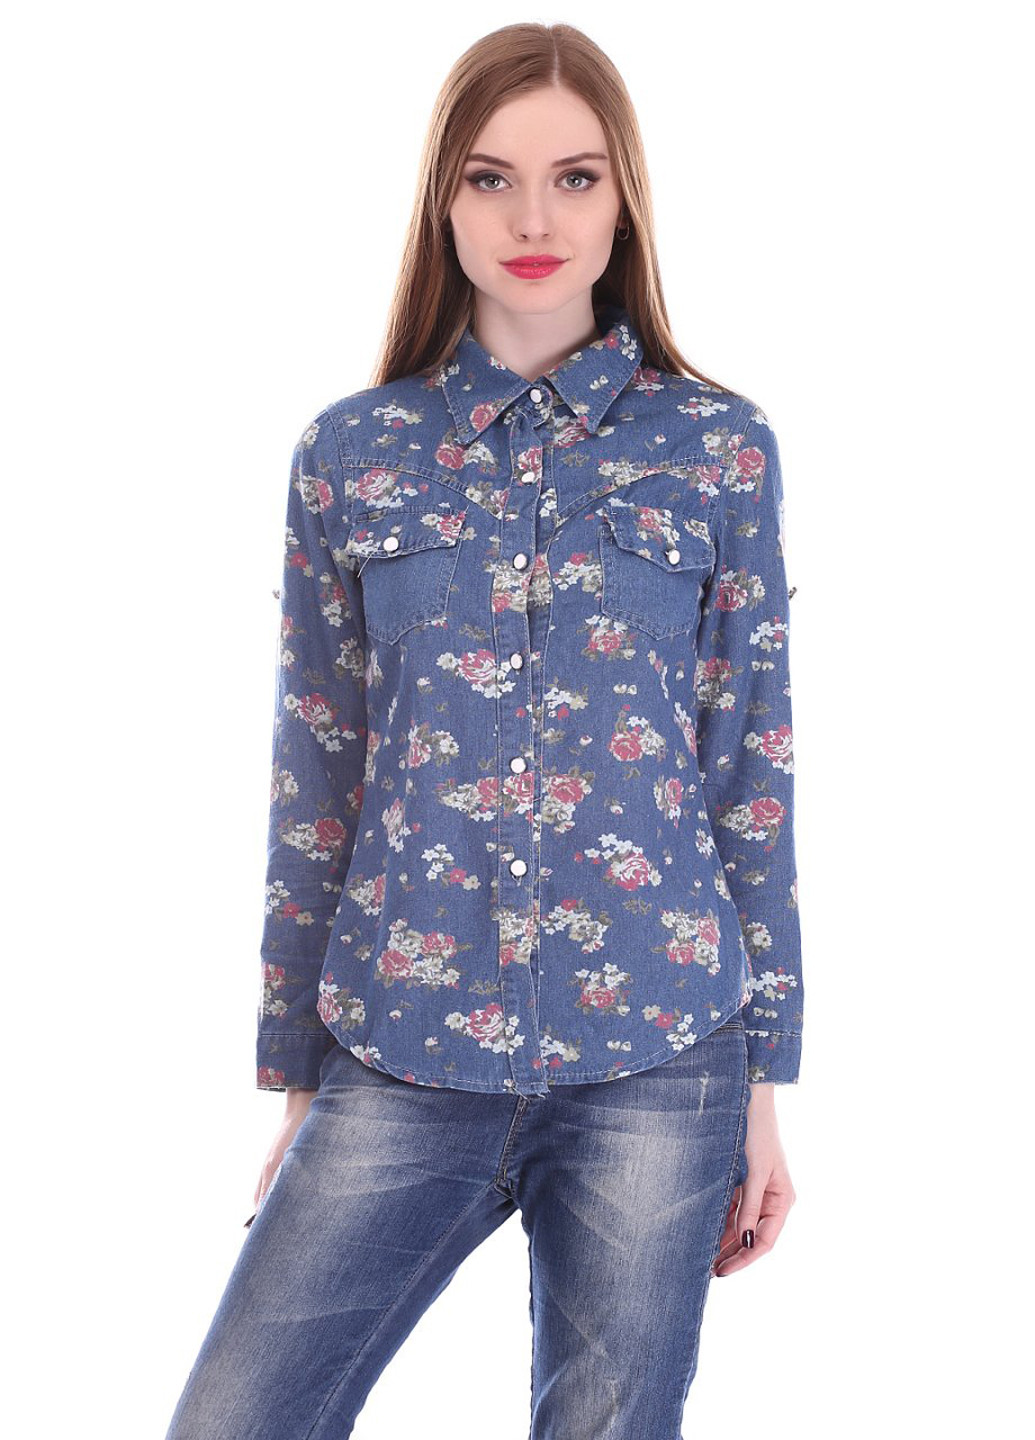 Джинсовая джинсовая рубашка с цветами Ginmeiyan Fashion